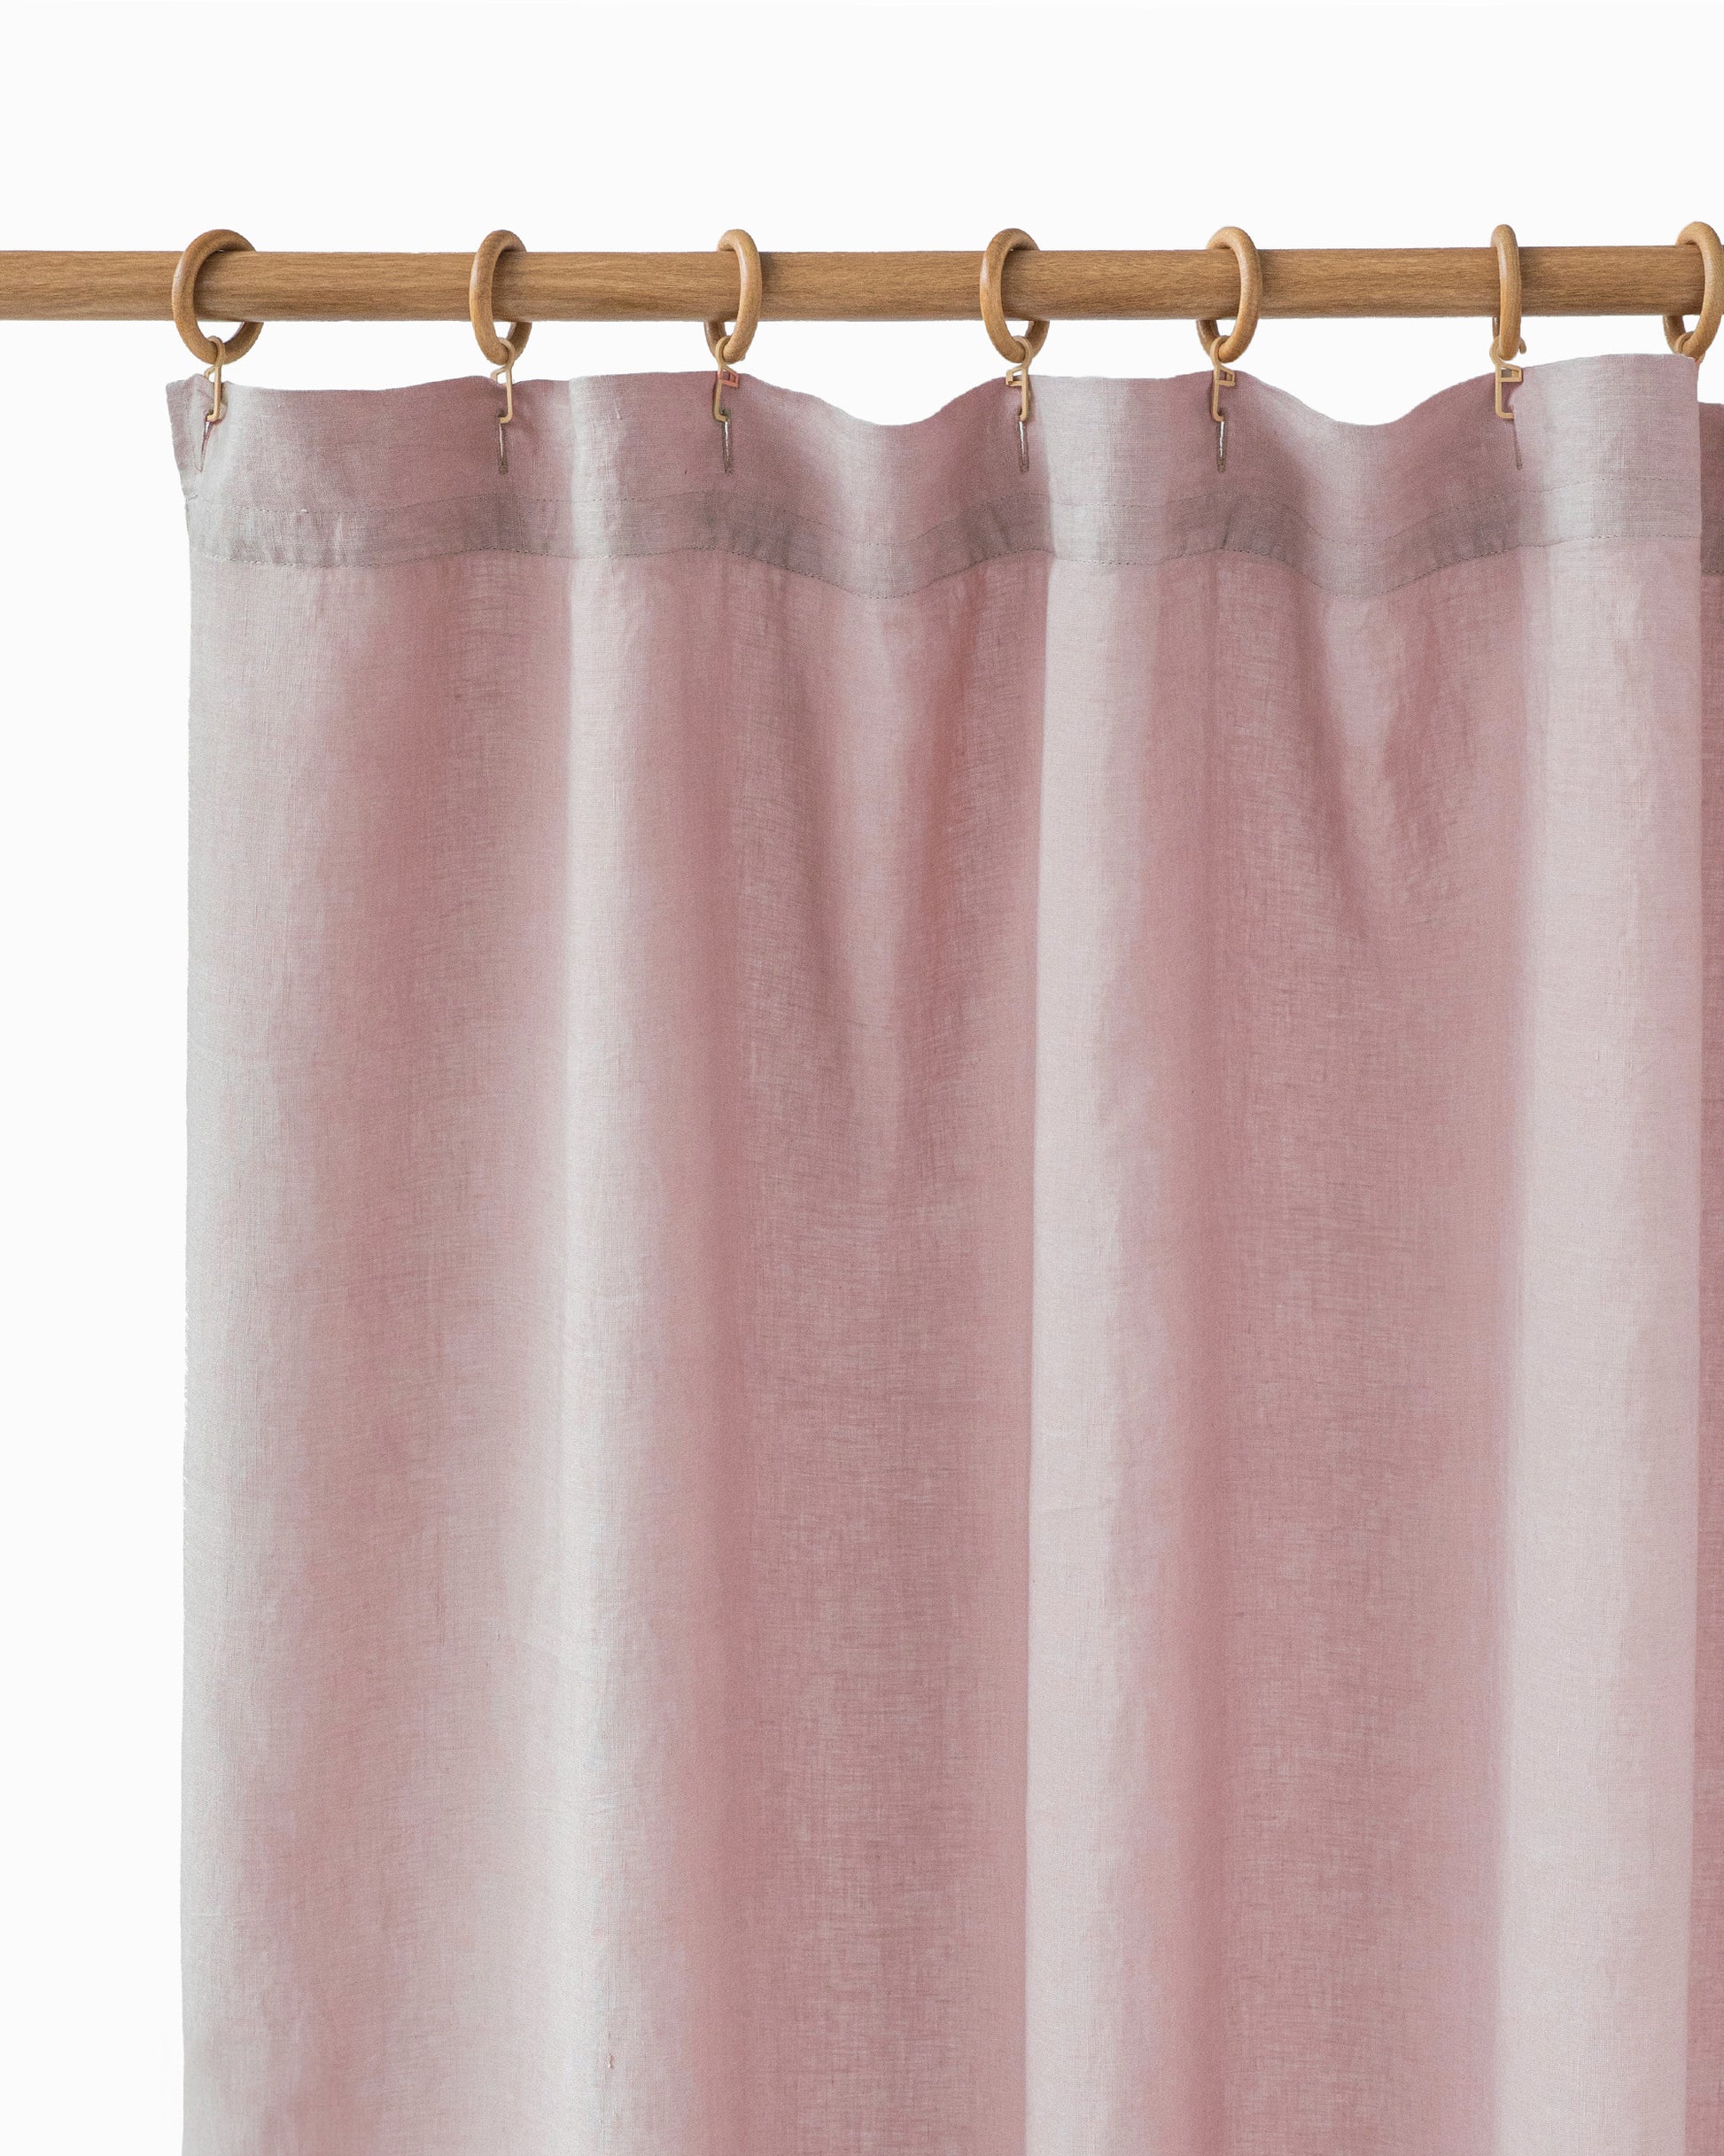 Waterproof linen shower curtain (1 pcs) in Woodrose - MagicLinen